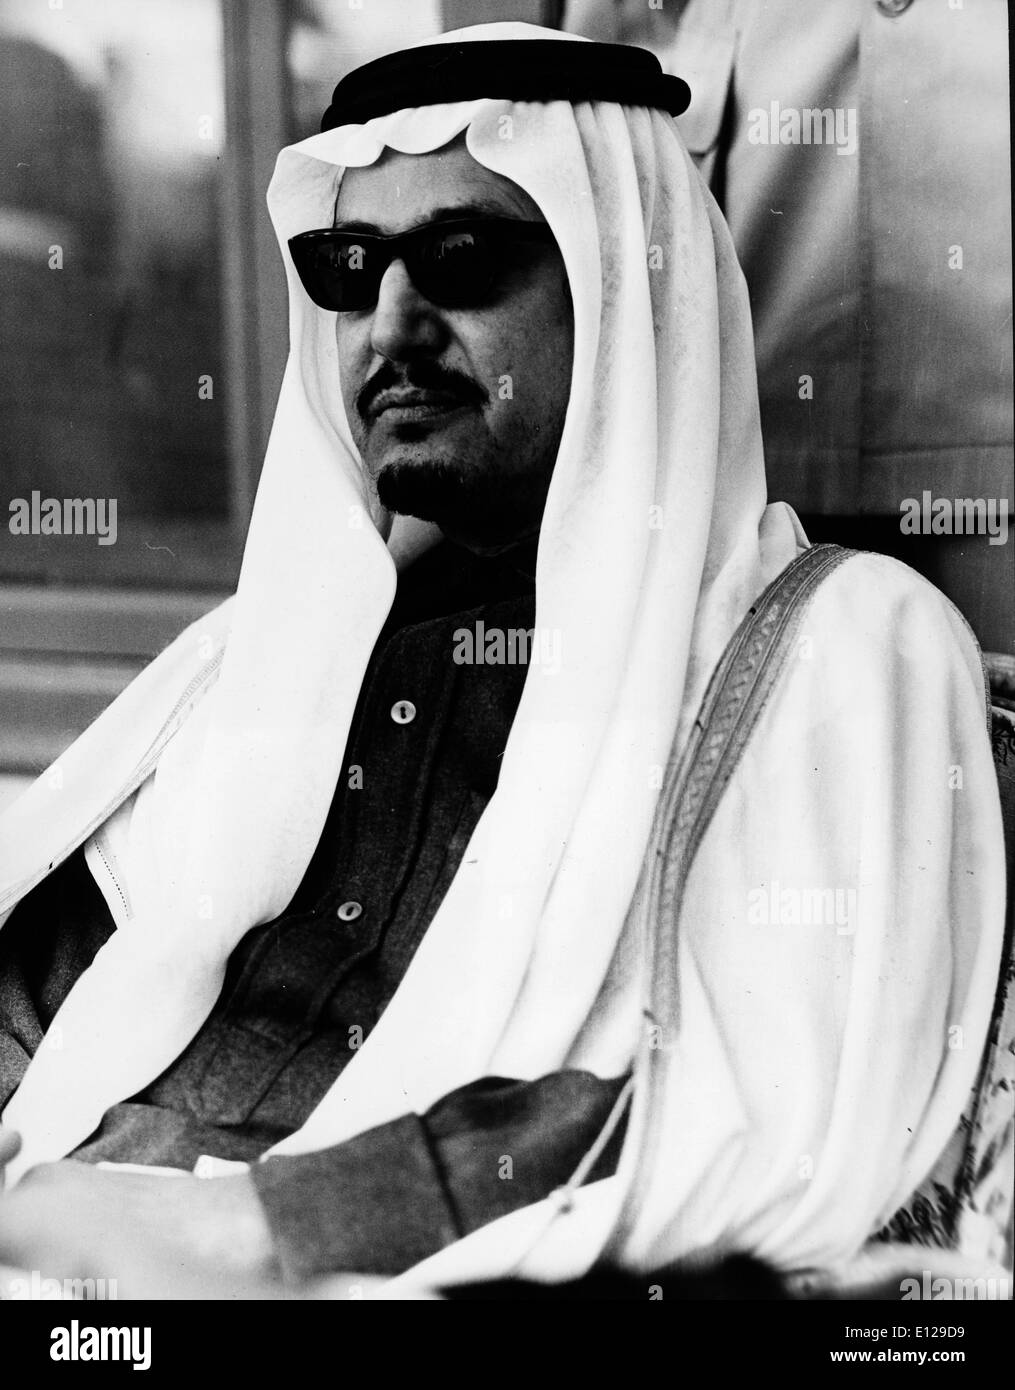 Фахд аль сауд. Фахд ибн Абдул-Азиз Аль Сауд. Король Фахд в Саудовской Аравии. Мишааль бинт Фахд Аль Сауд. Ахмад Аль Сауд гимнаст.